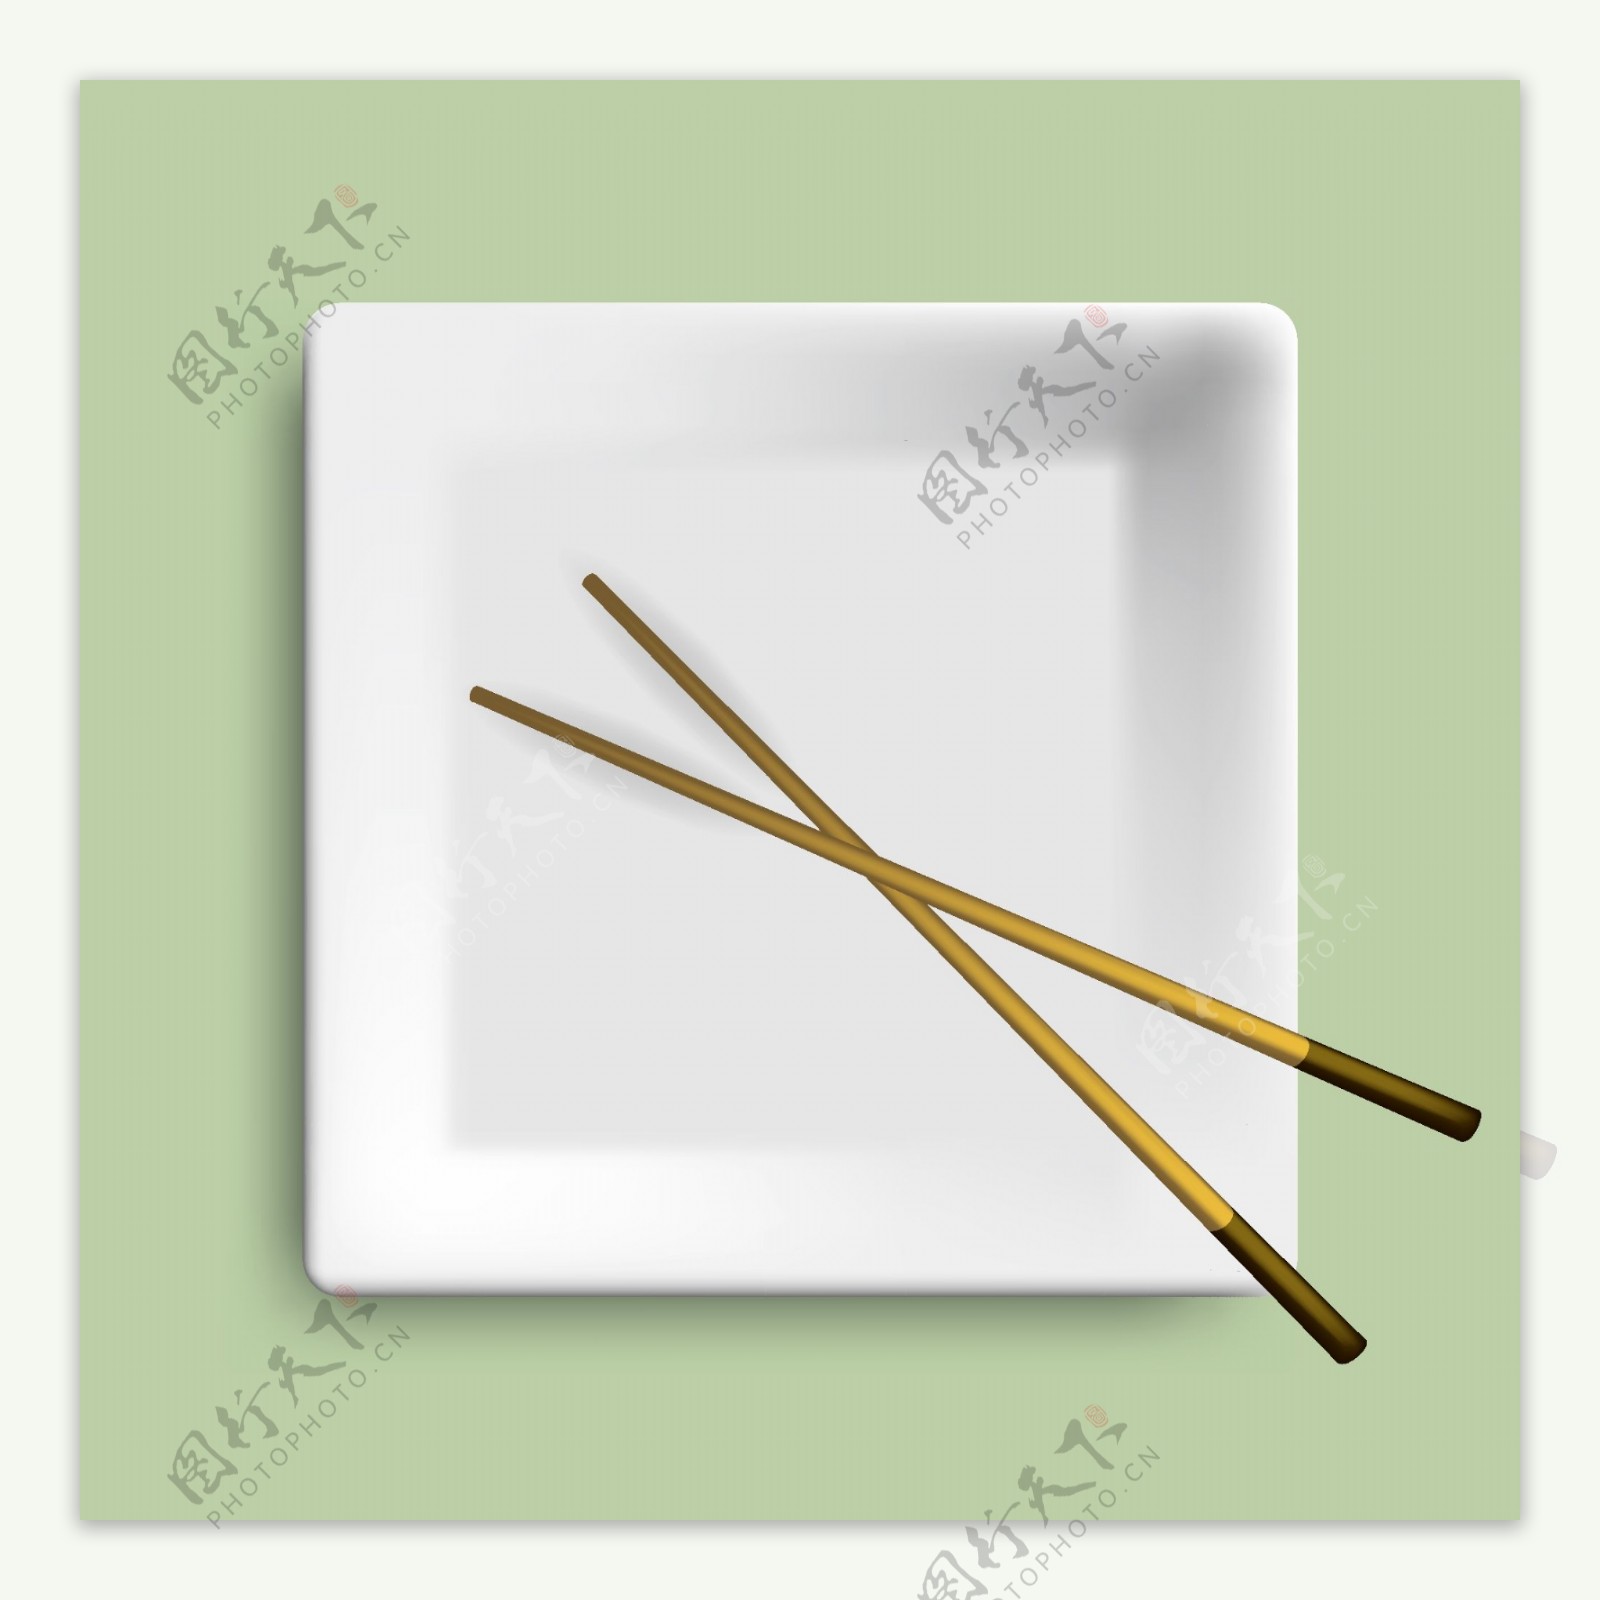 方形餐盘与筷子